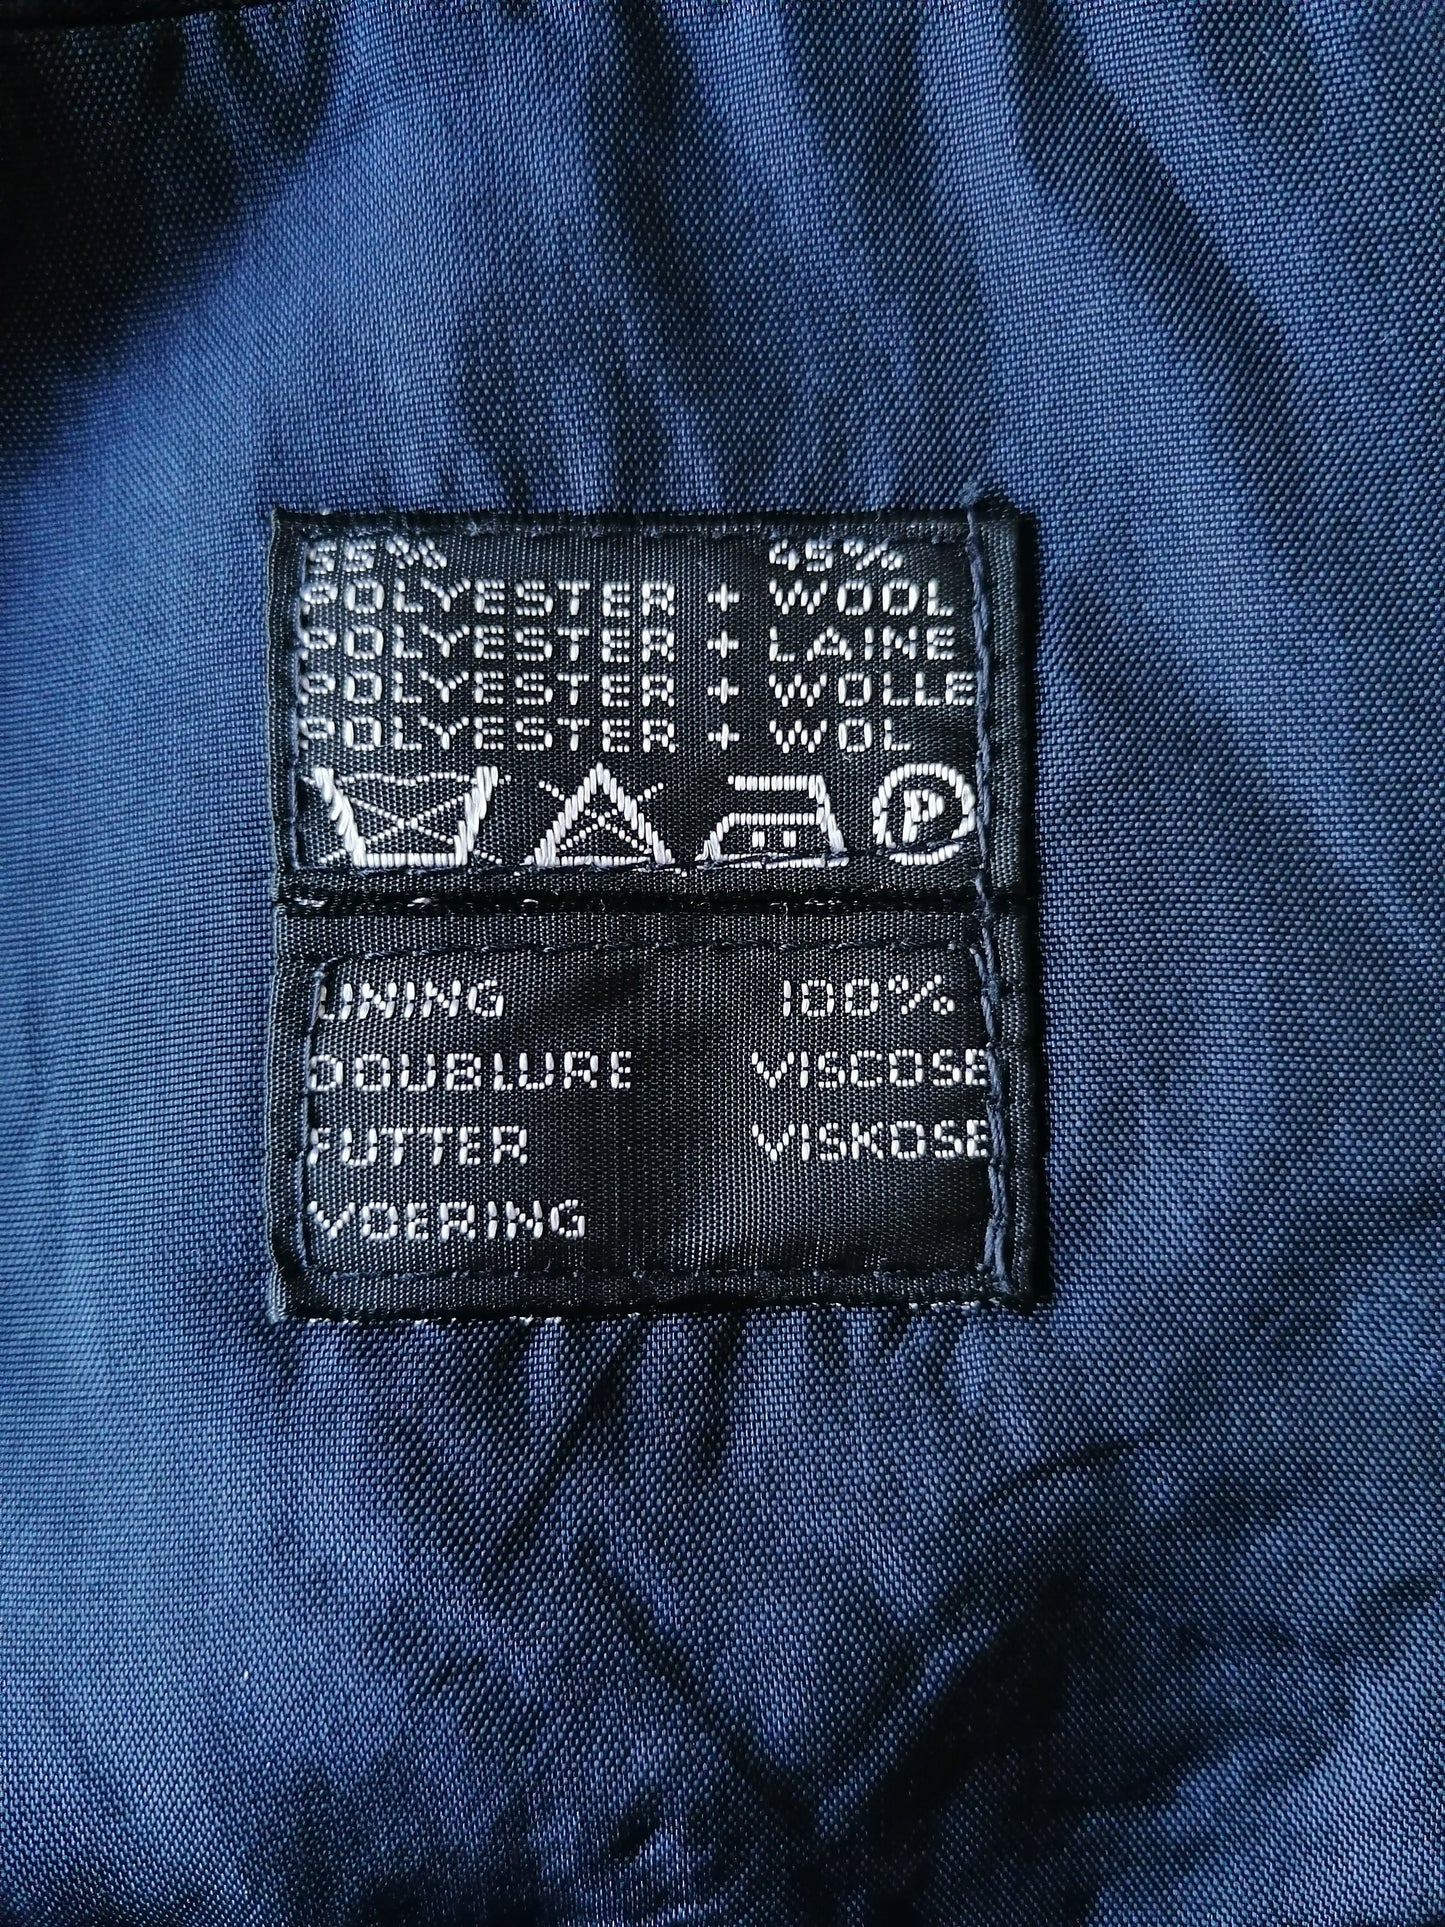 Disfraz de lana vintage. Color azul oscuro. Tamaño 56 / xl.